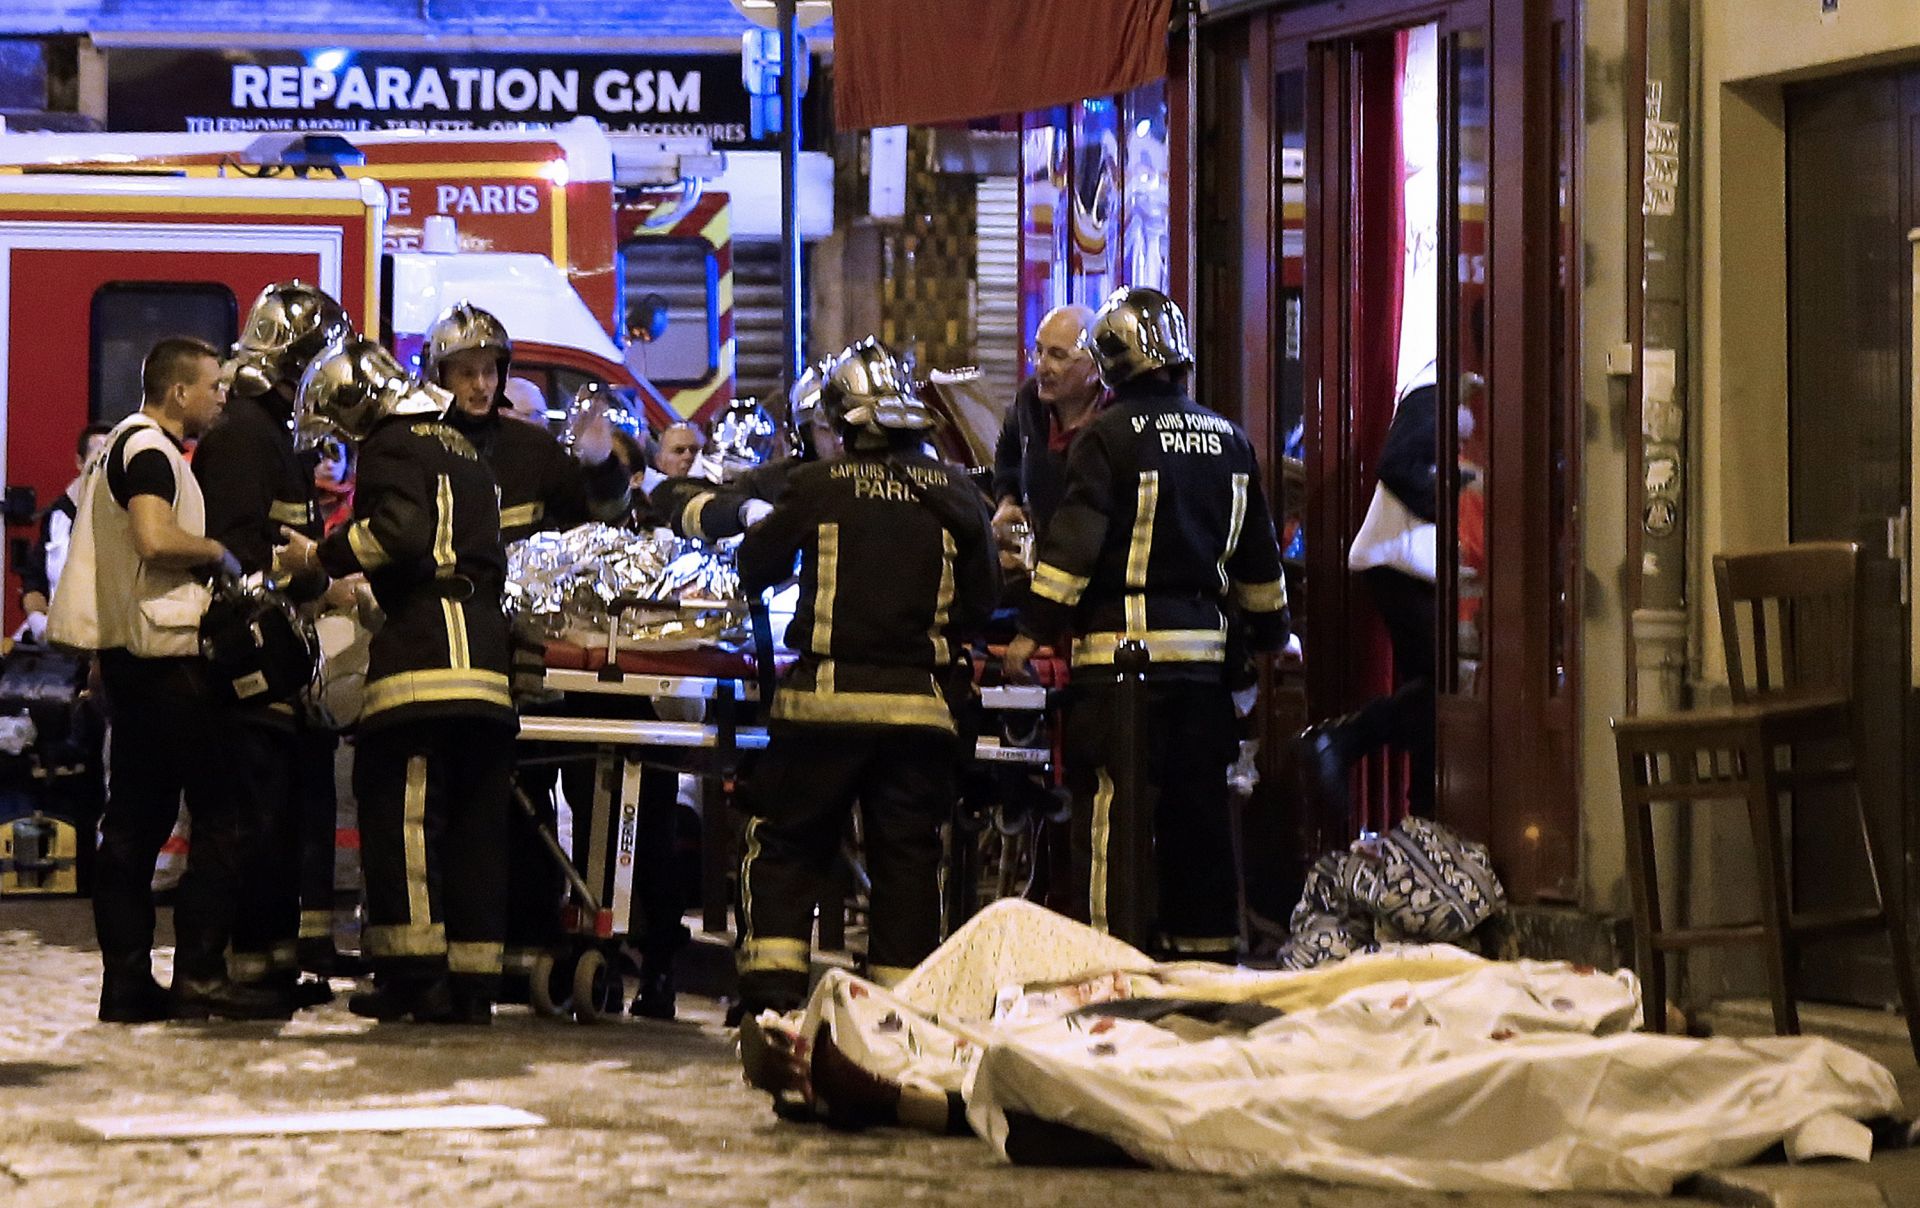 89 души бяха застреляни в парижката зала през 2015 г.